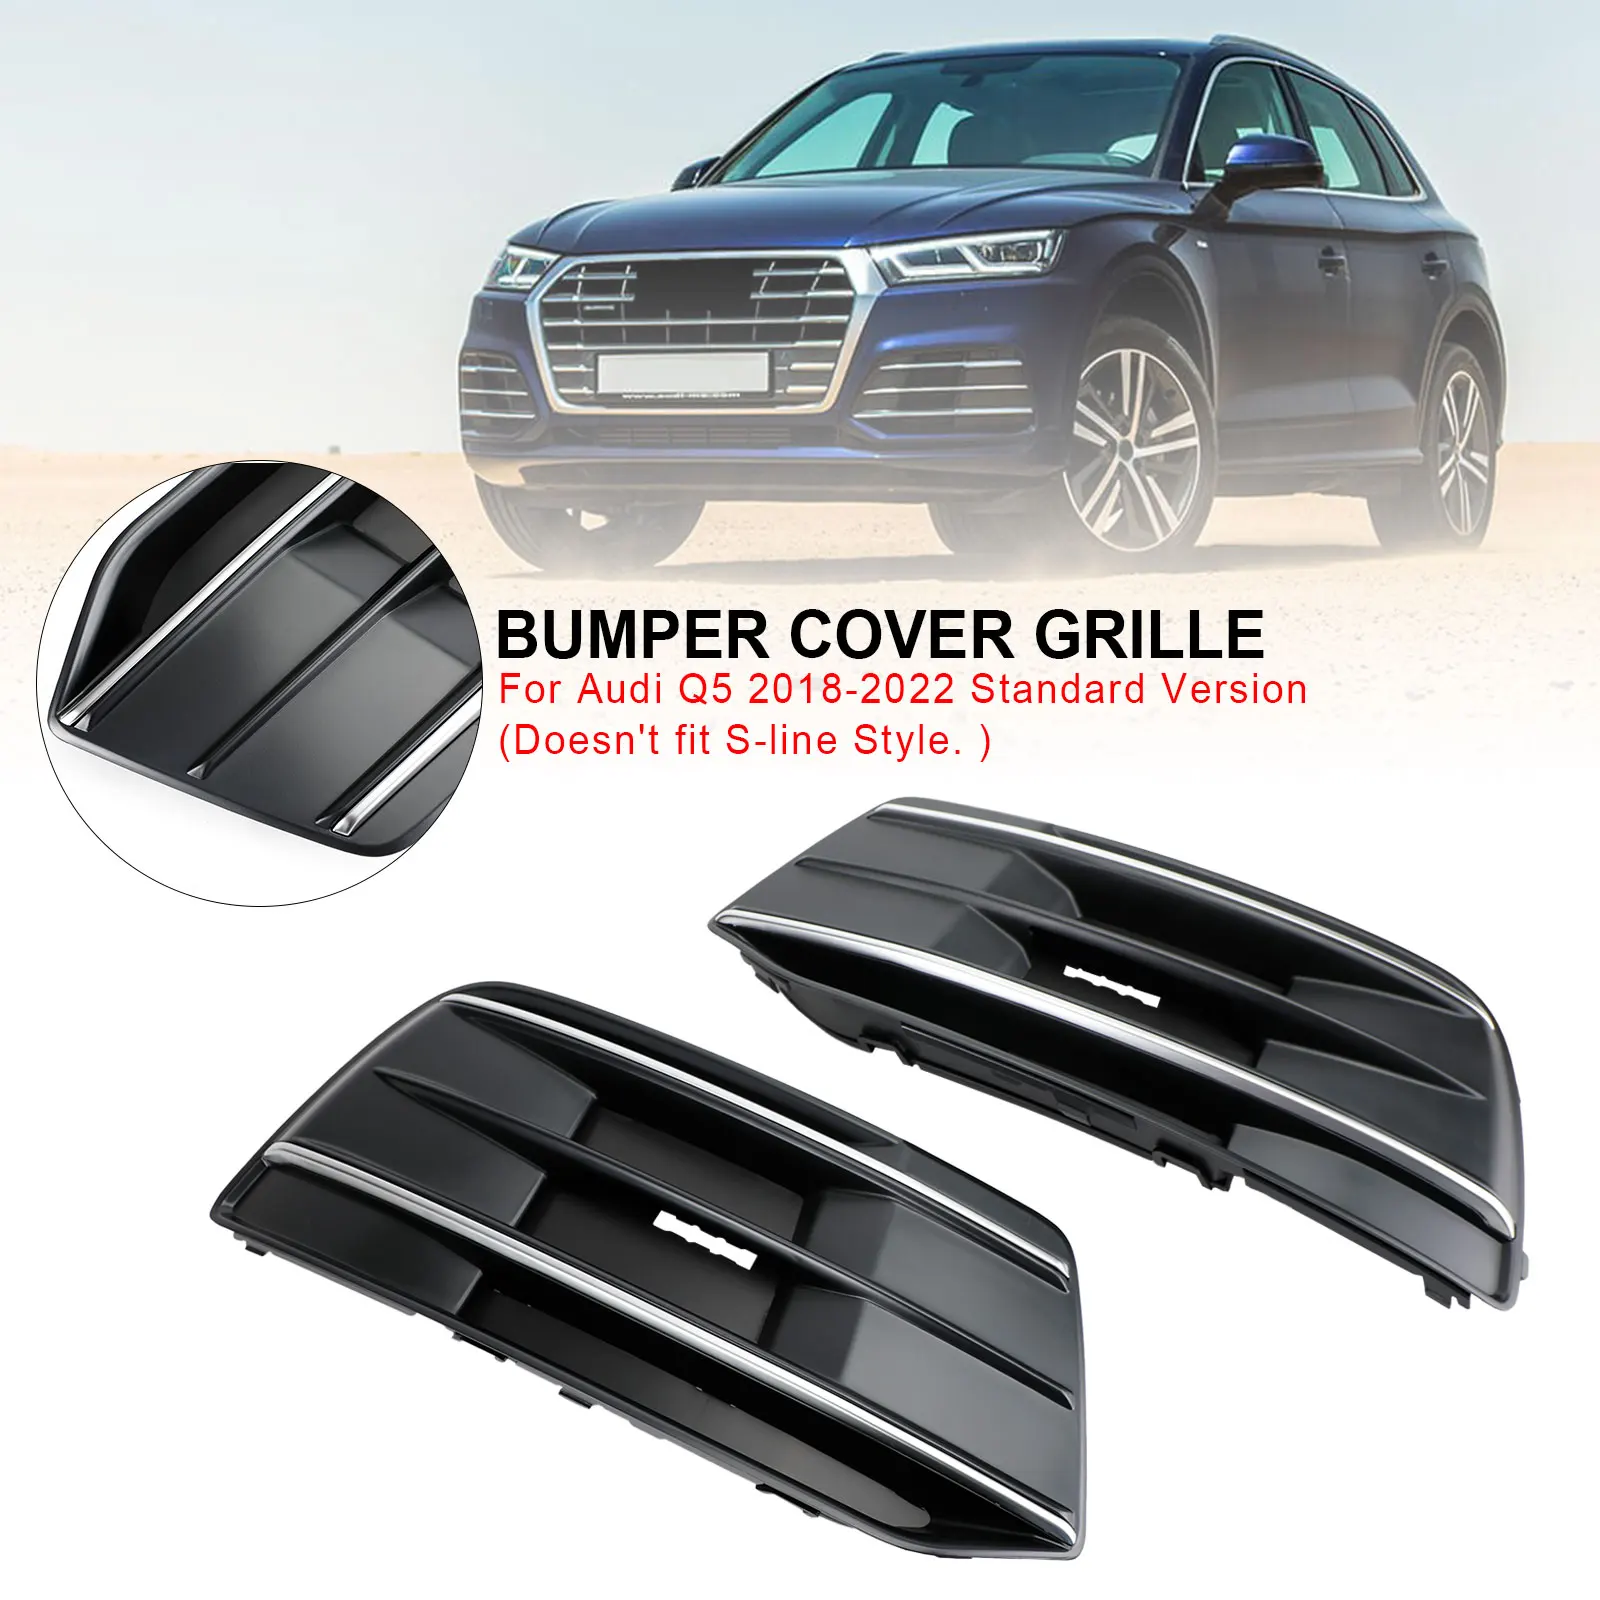 

Artudatech 2PCS Front Bumper Cover Grille Bezel Insert Fit For Audi Q5 2018-2022 Black/Chrome Car Accessories